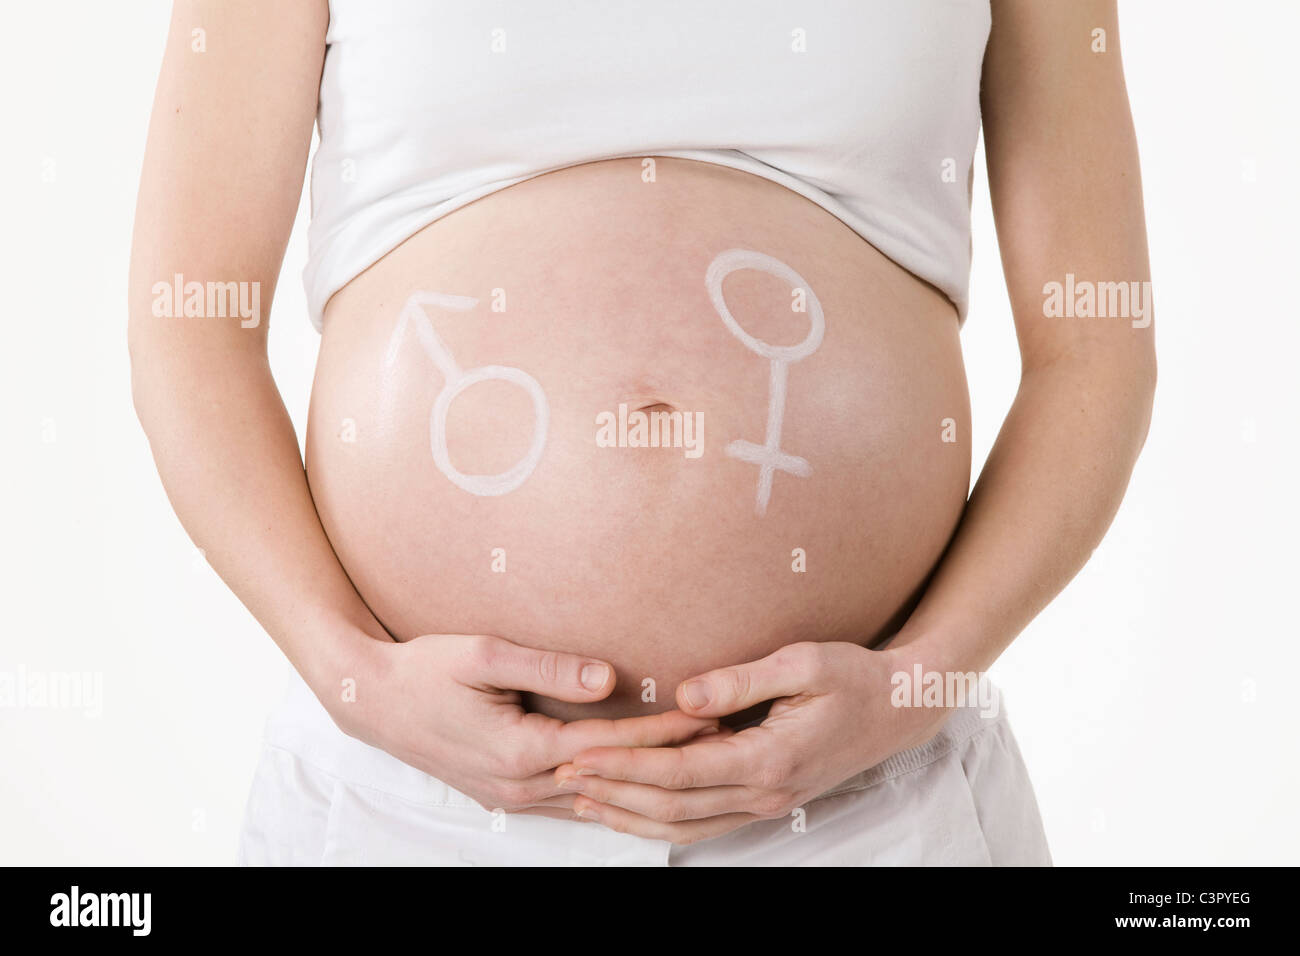 Homme et femme symbole dessiné sur le ventre d'une femme enceinte, portrait Banque D'Images